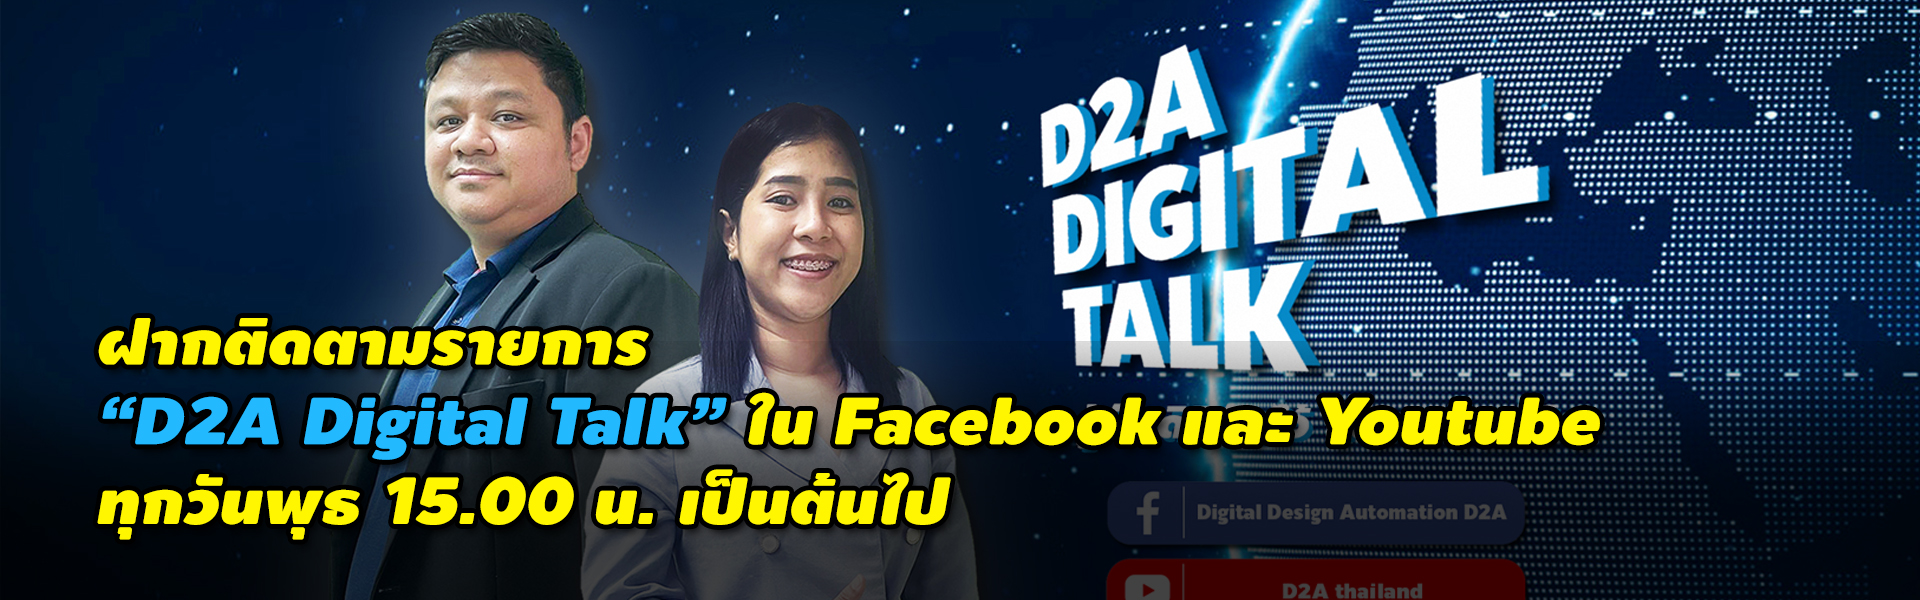 D2A Digital Talk